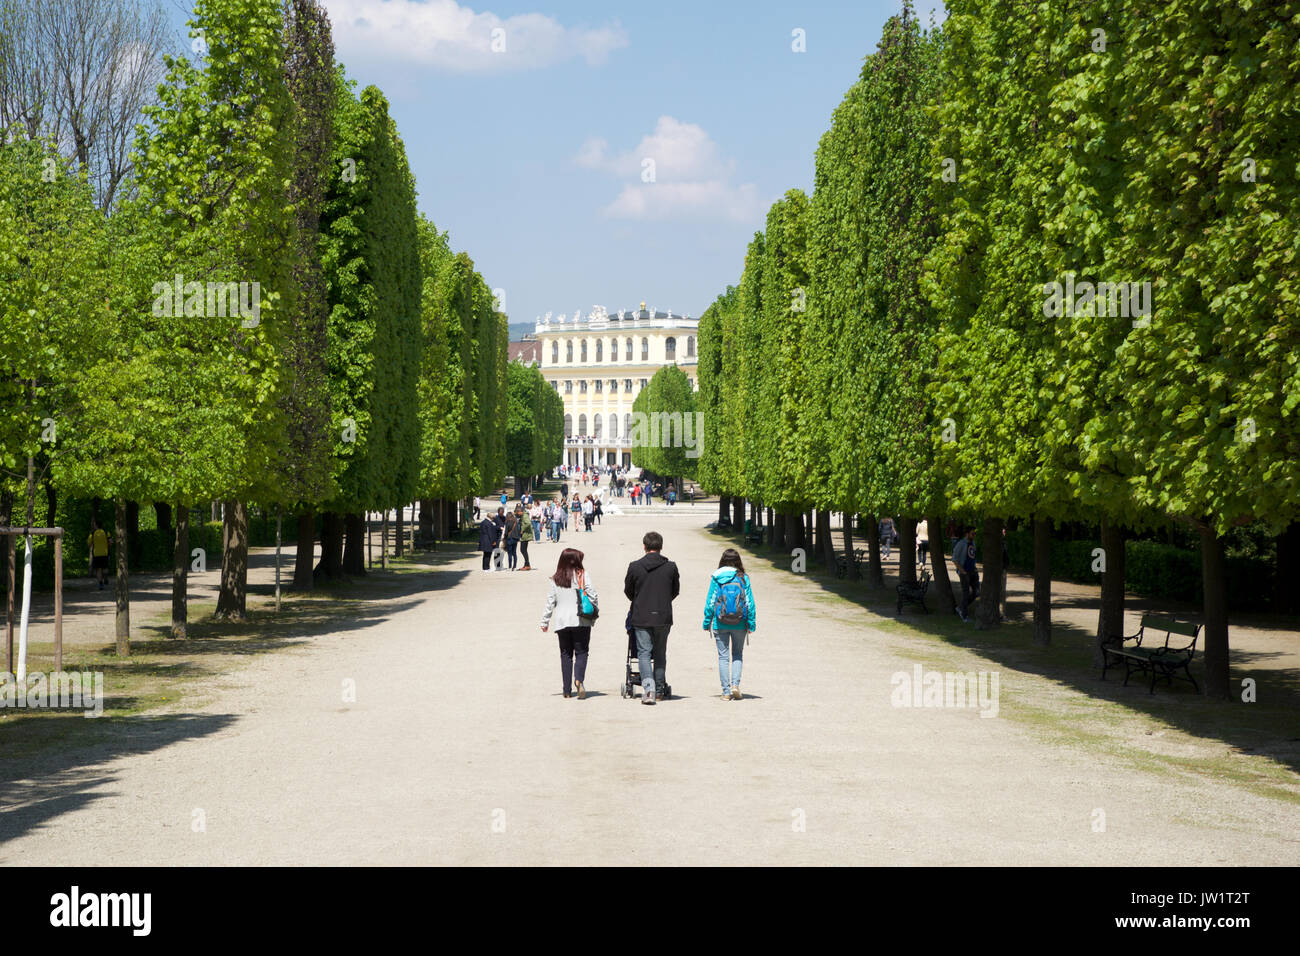 Vienne, AUTRICHE - avril 30th, 2017 : parc public à Schonbrunn. C'est un ancien imperial 1441 Rococo-résidence d'été de Sissi l'Impératrice Elisabeth d'Autriche à Vienne moderne. Balades touristiques dans le parc Banque D'Images